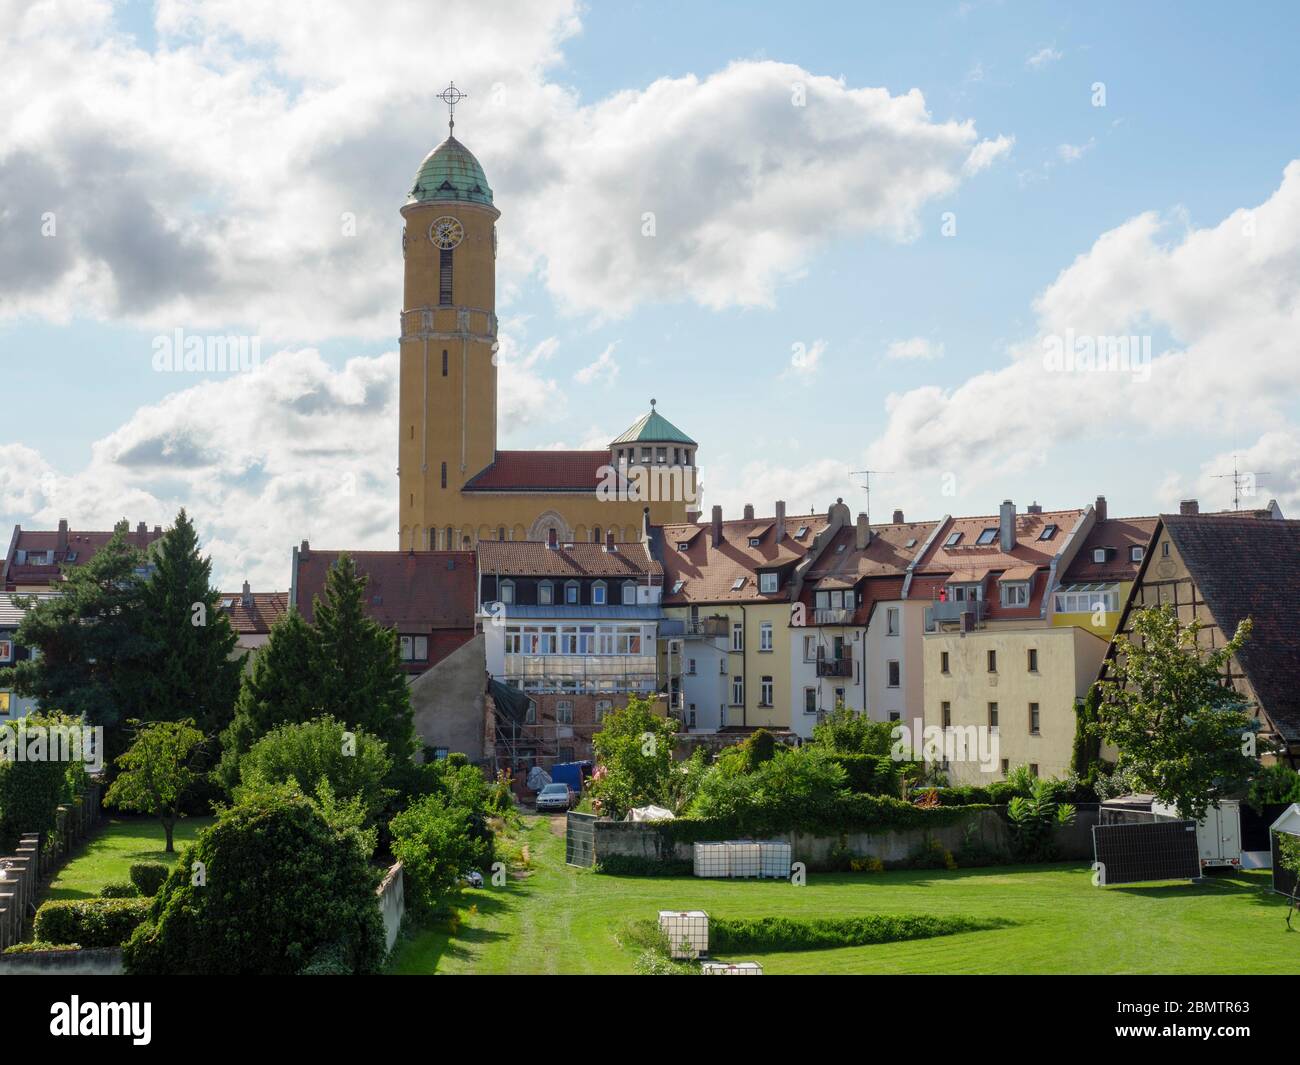 St. Otto Kirche, Gartenstadt, Bamberg, Bayern, Deutschland Stock Photo